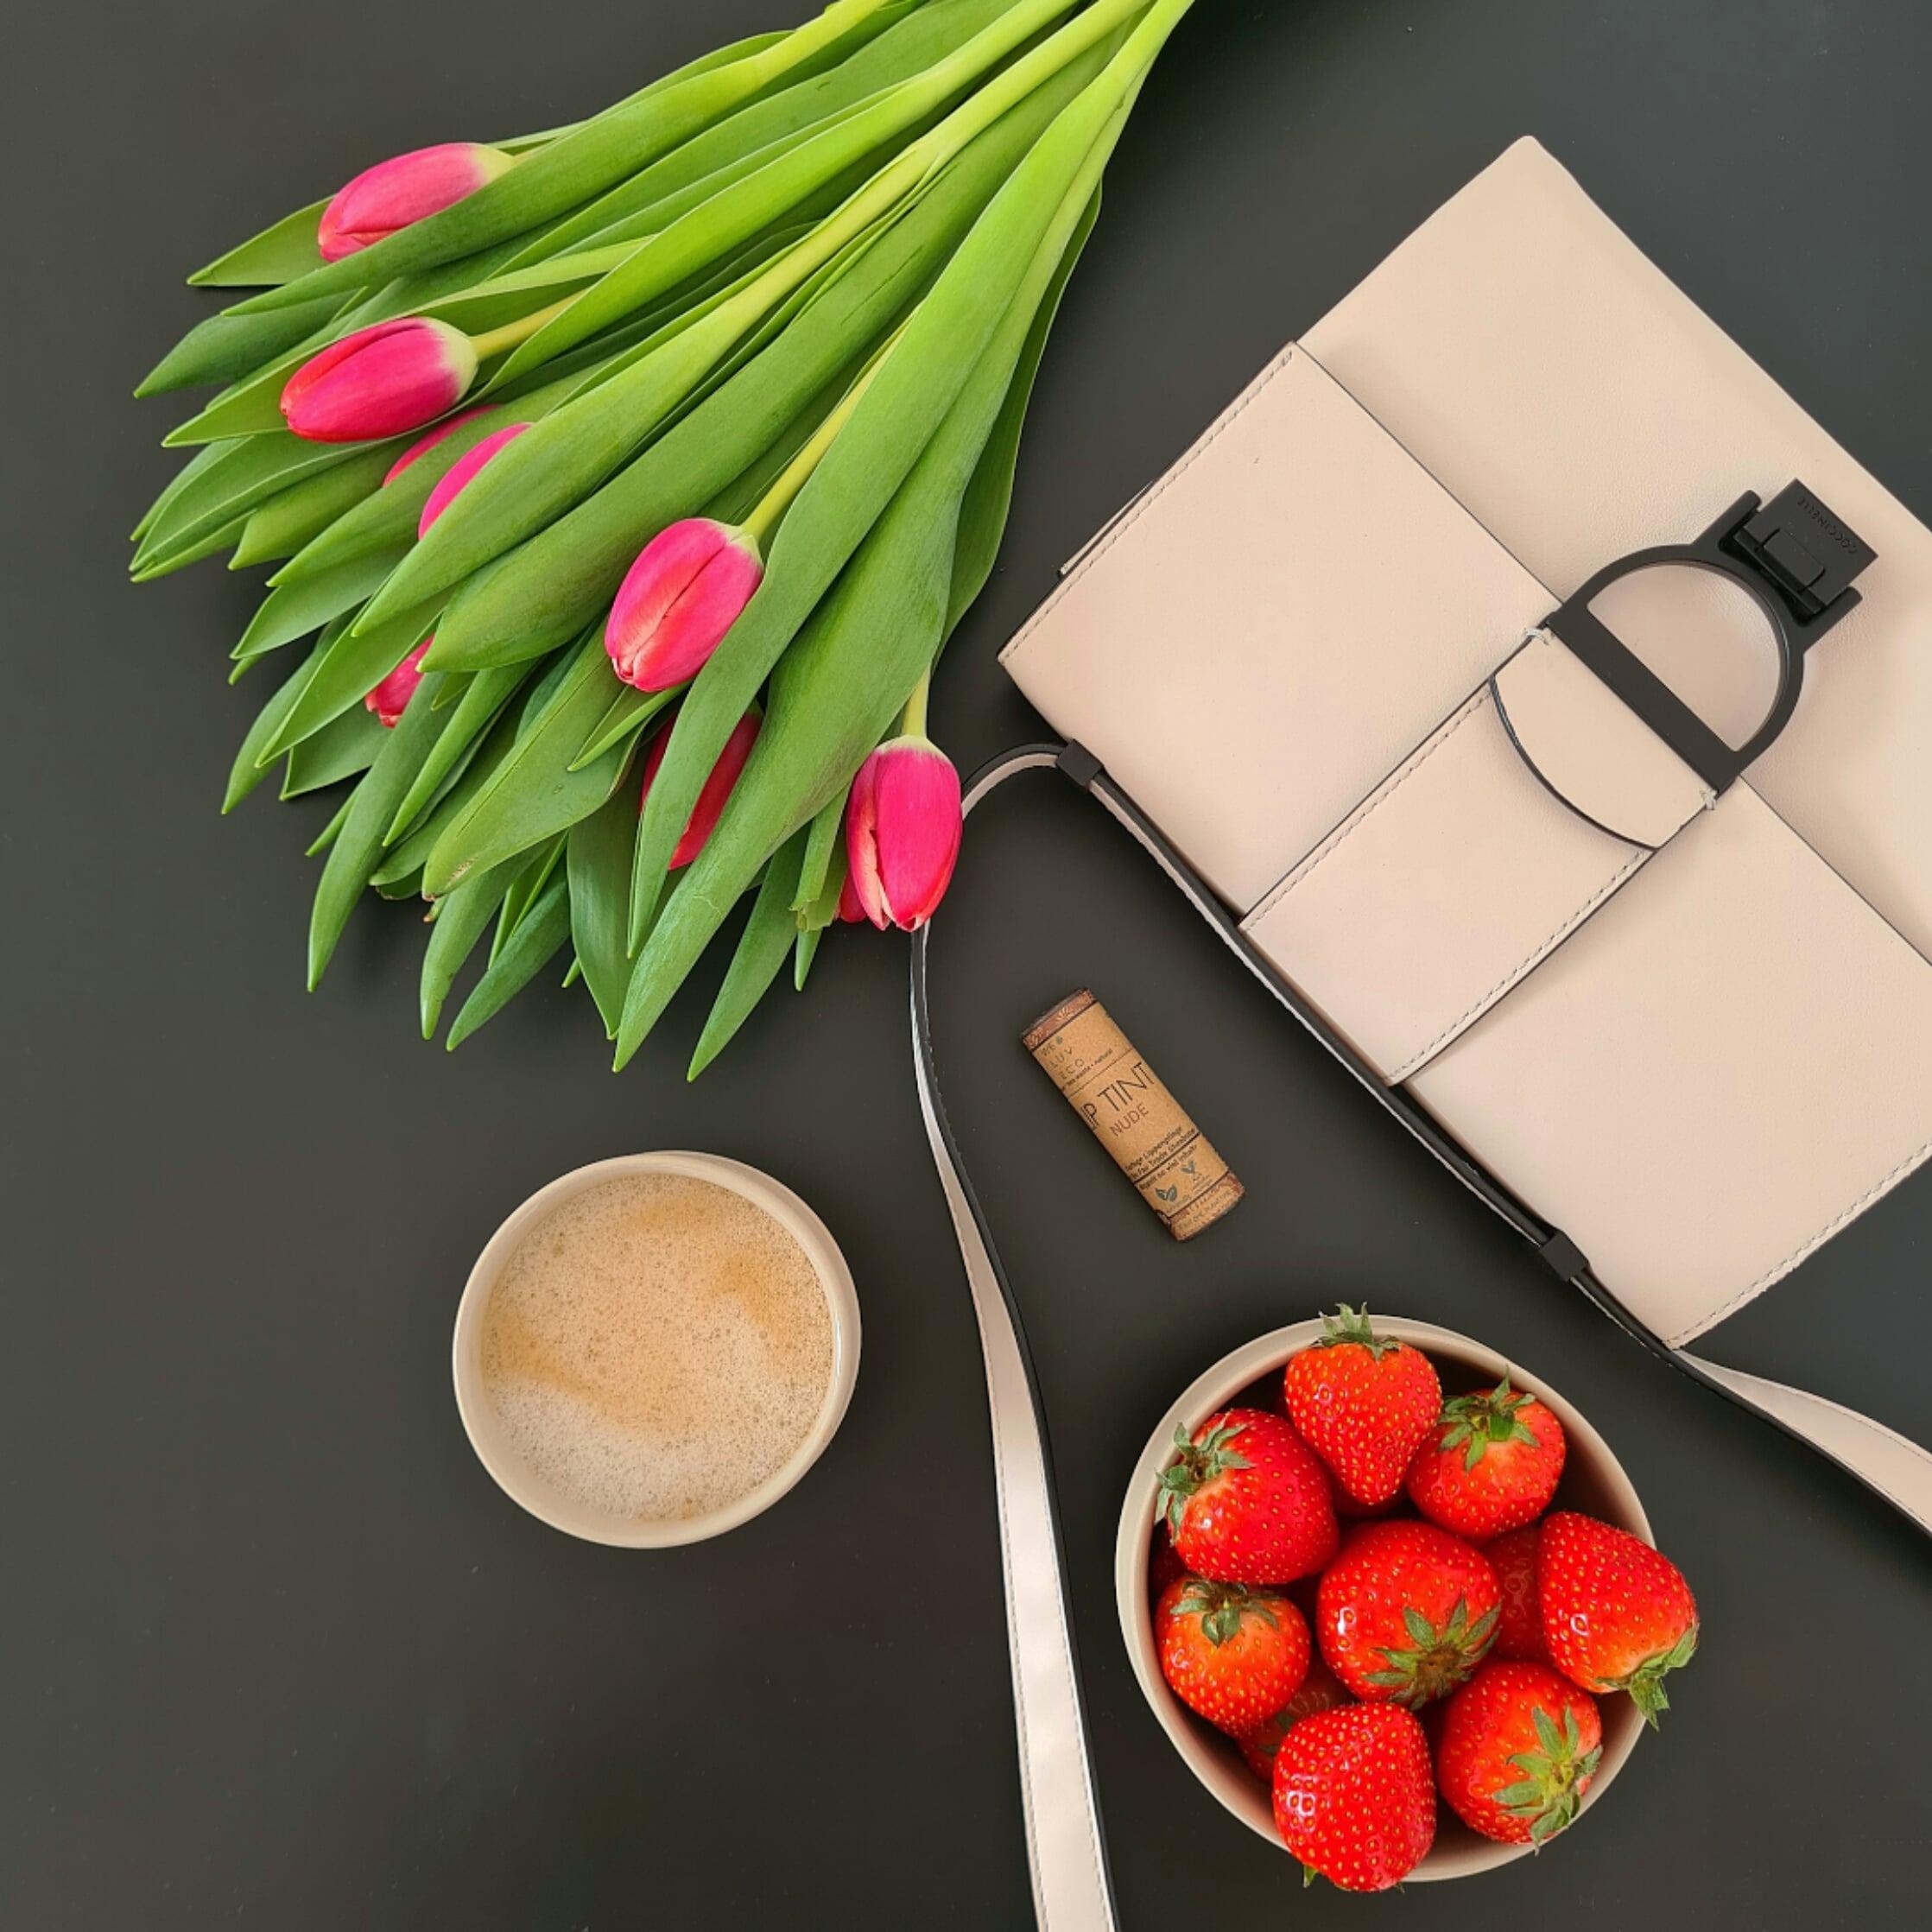 frische blumen, erdbeeren und kaffee - perfekter start in den sonnigen tag ☀️ #tulpenliebe #erdbeerenliebe #kaffeeliebe